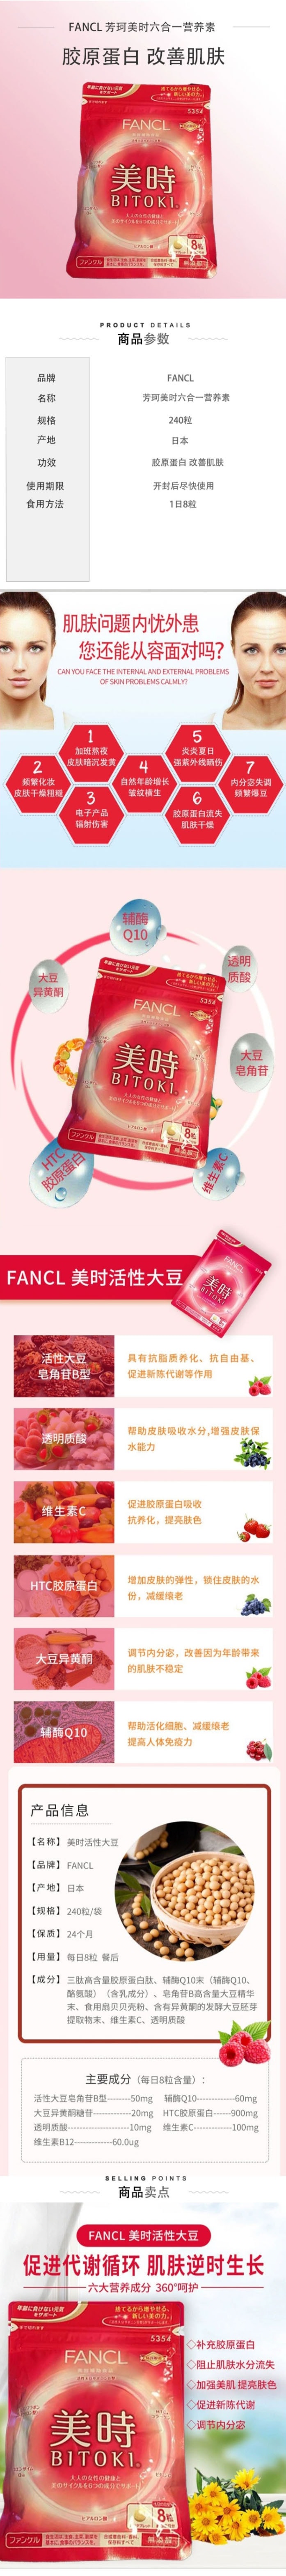 【日本直邮】FANCL芳珂 美时改善肌肤大豆胶原蛋白玻尿酸营养素 240片/30天量